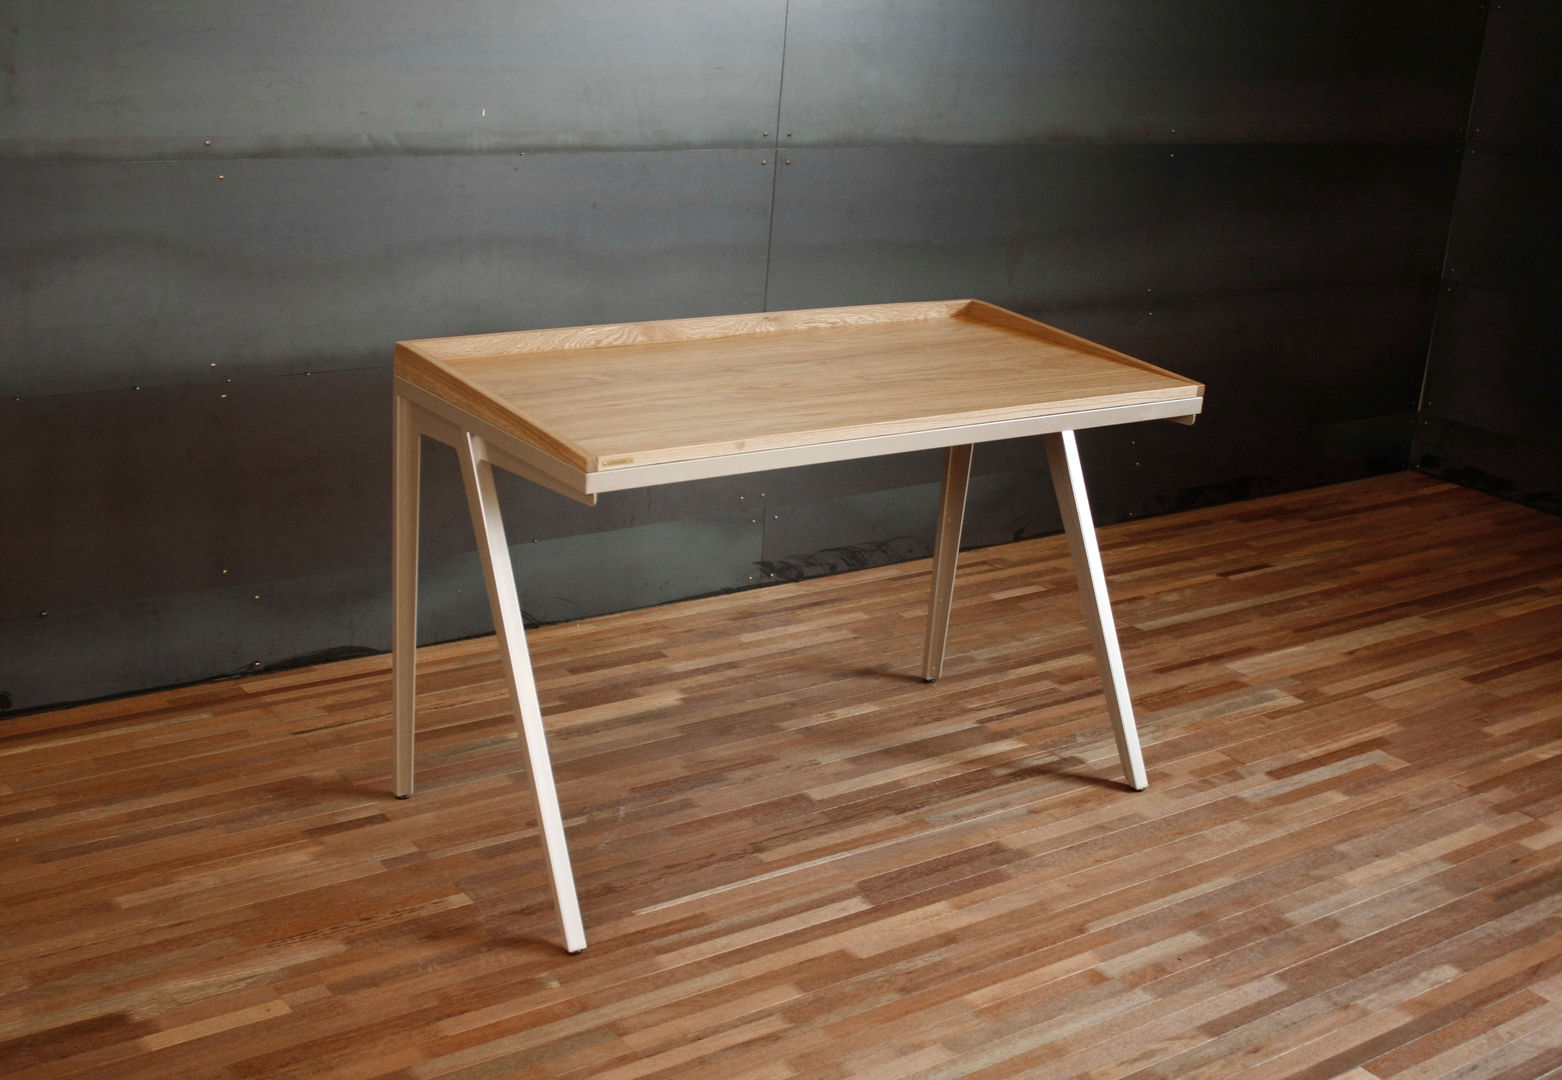 Steel leg desk for Samsung, JSUT FURNITURE JSUT FURNITURE Estudios y despachos de estilo minimalista Escritorios